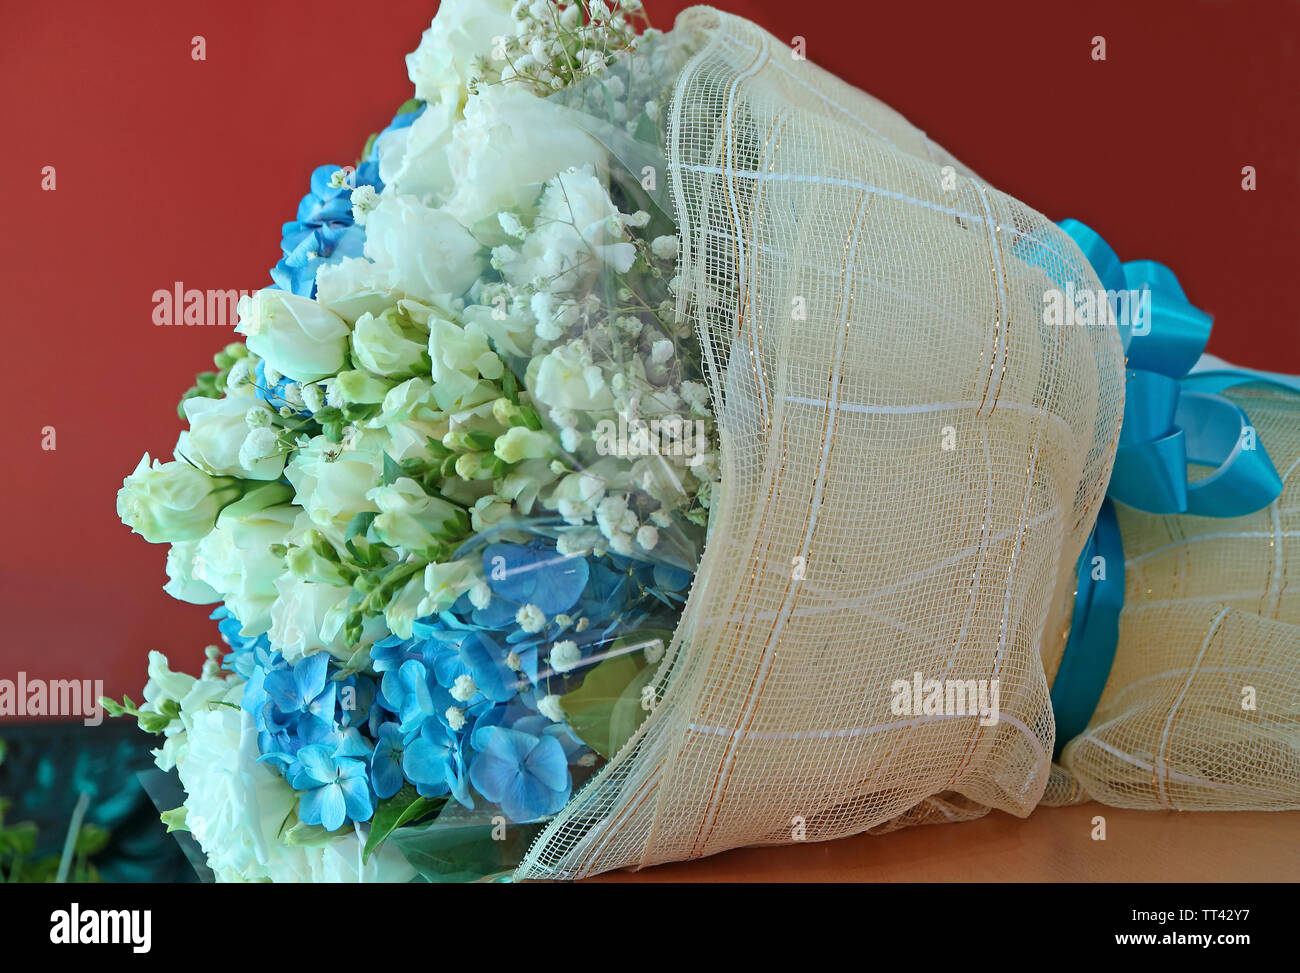 Rose blanche et bleu Hortensia bouquet sur la table Photo Stock - Alamy